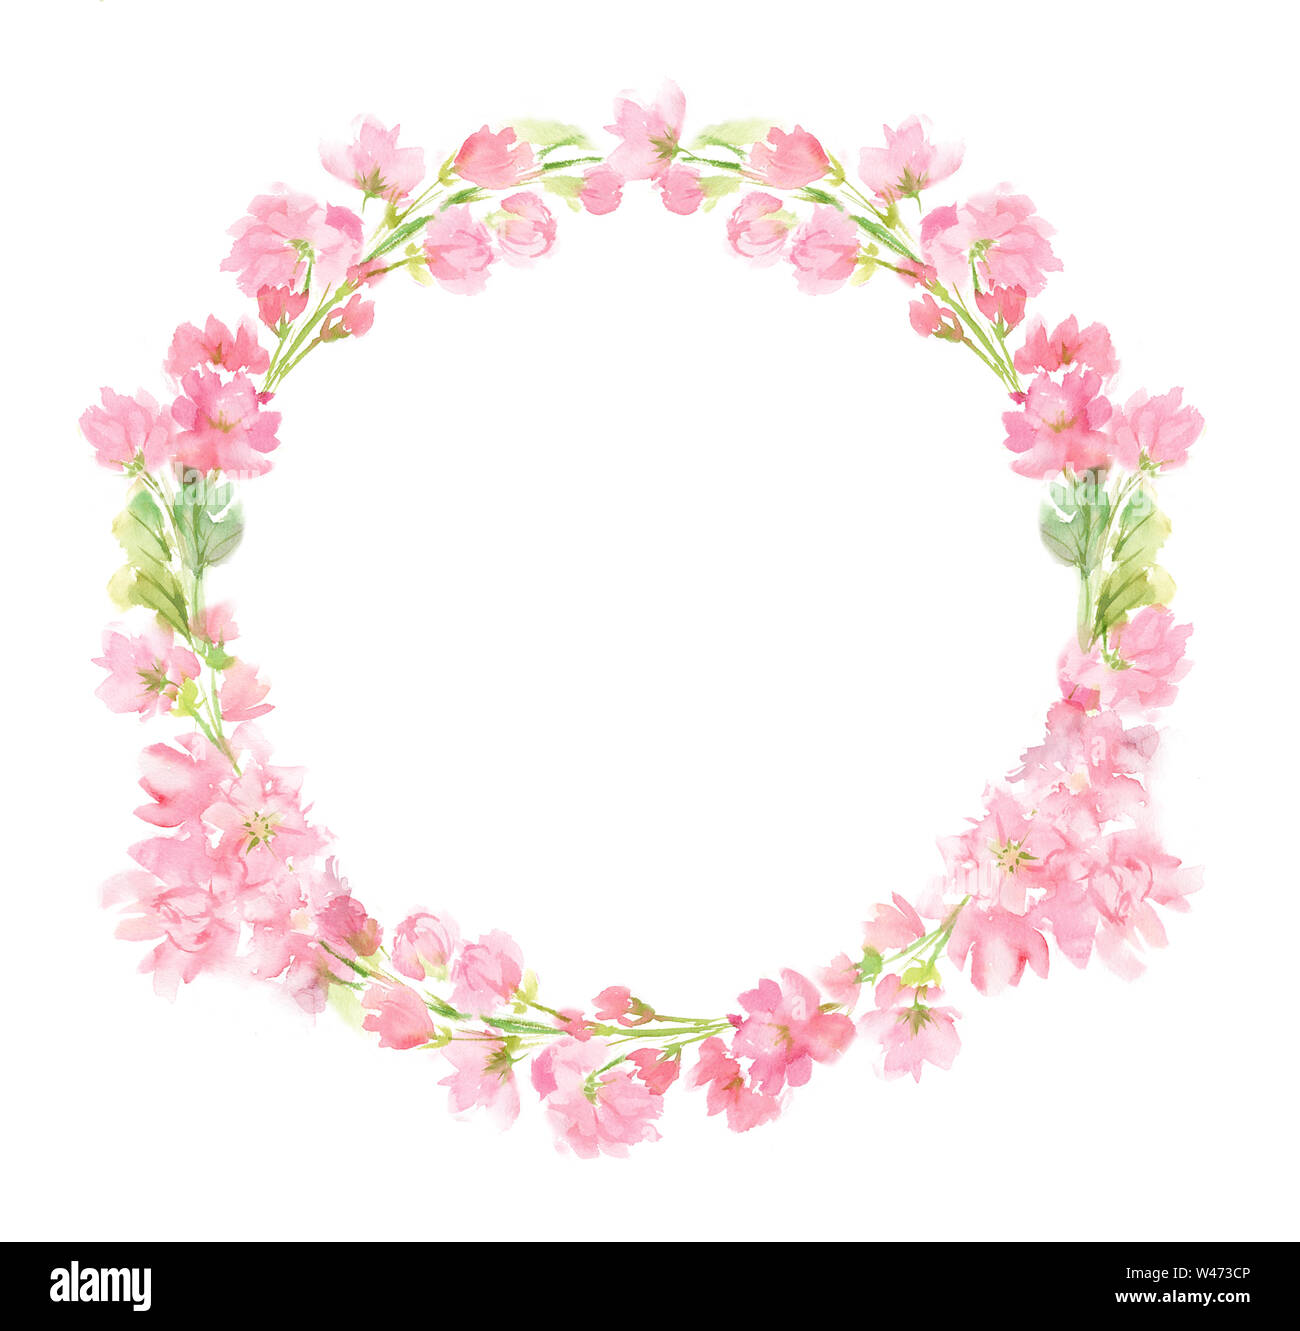 Rosa floreale astratta acquerello tutta la ghirlanda rotonda con colori pastello fiori e foglie dipinte a mano in disposizione circolare per il messaggio di saluto della scheda di nozze Foto Stock